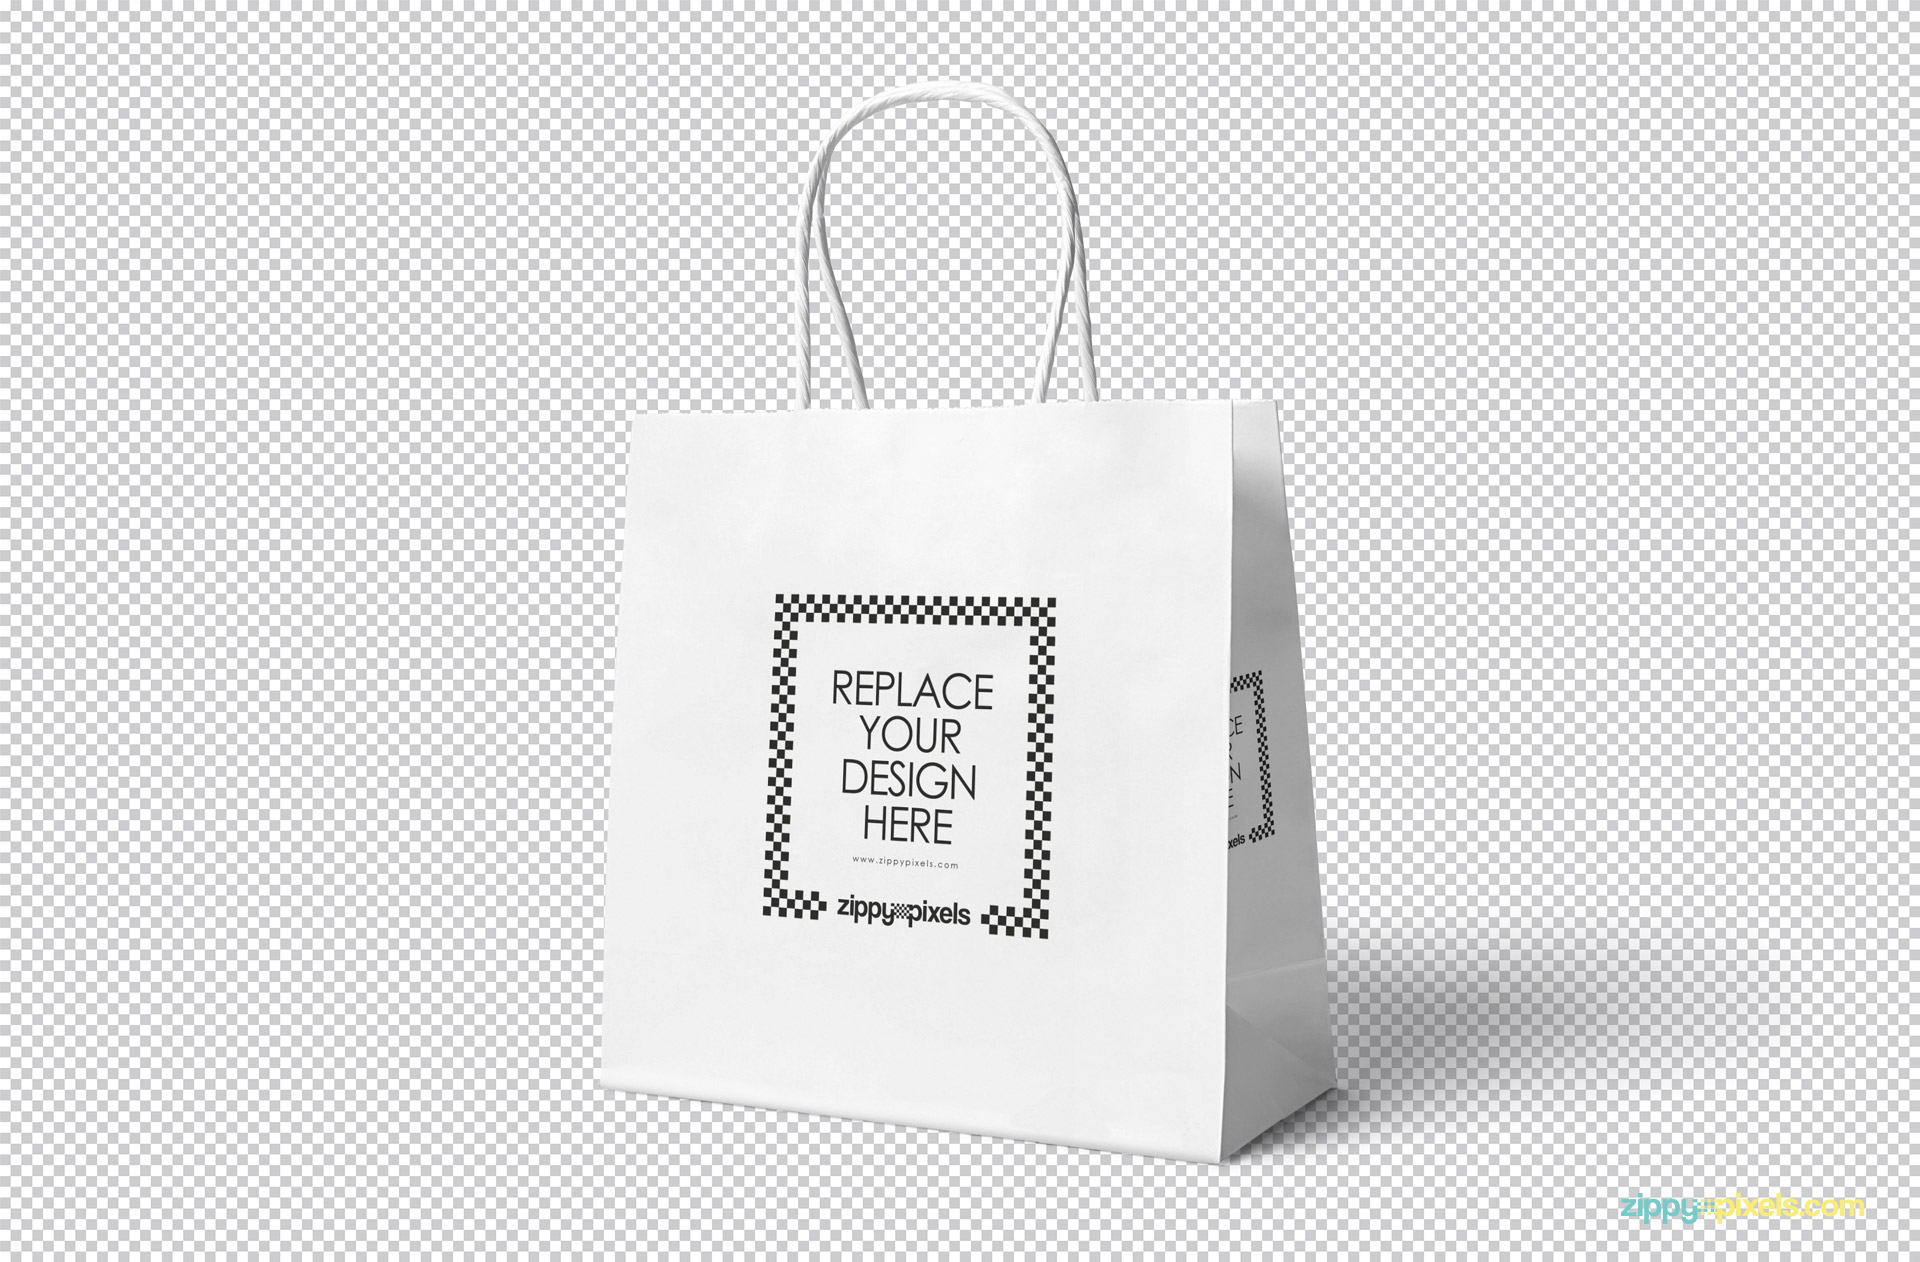 Gift Bag PSD Mockup Download for Free - DesignHooks